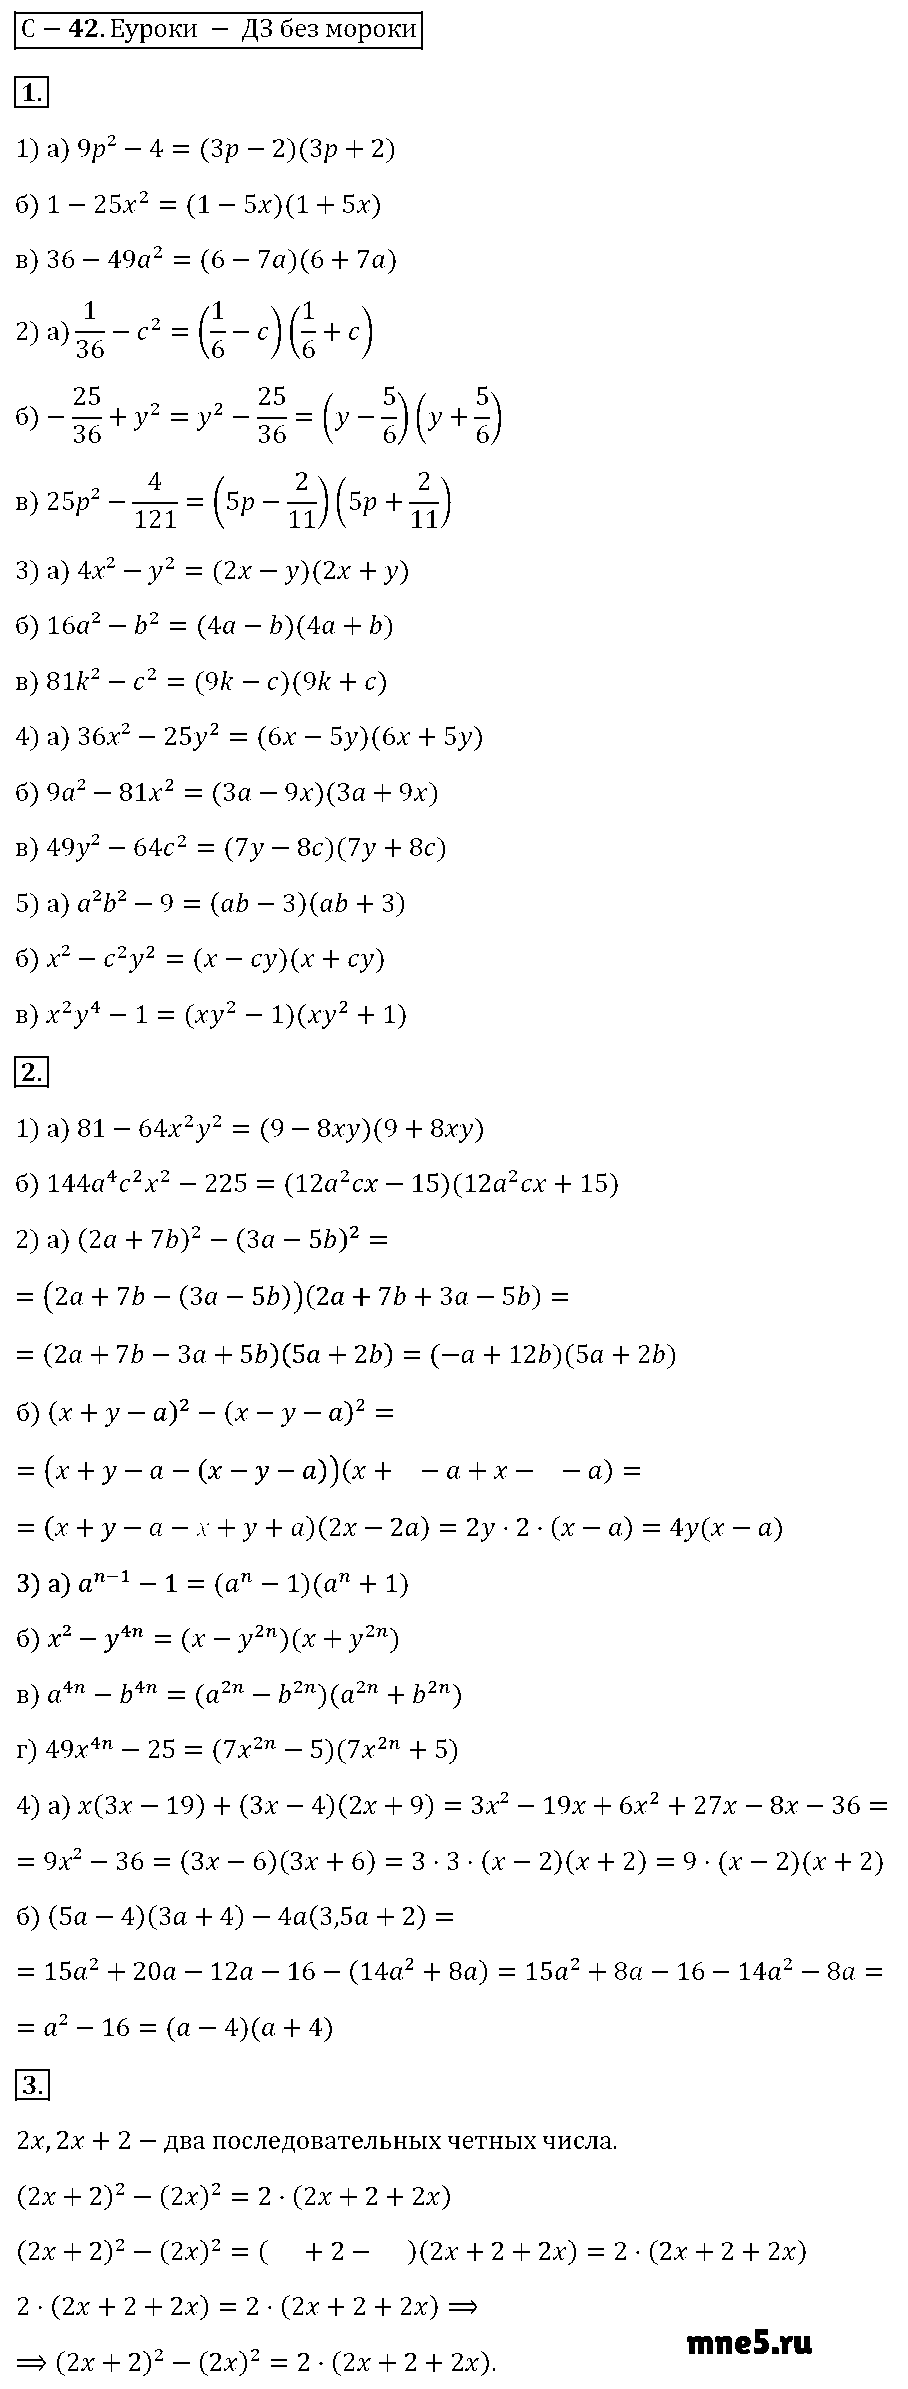 ГДЗ Алгебра 7 класс - С-42. Разложение на множители по формуле a2-b2=(a-b)(a+b)